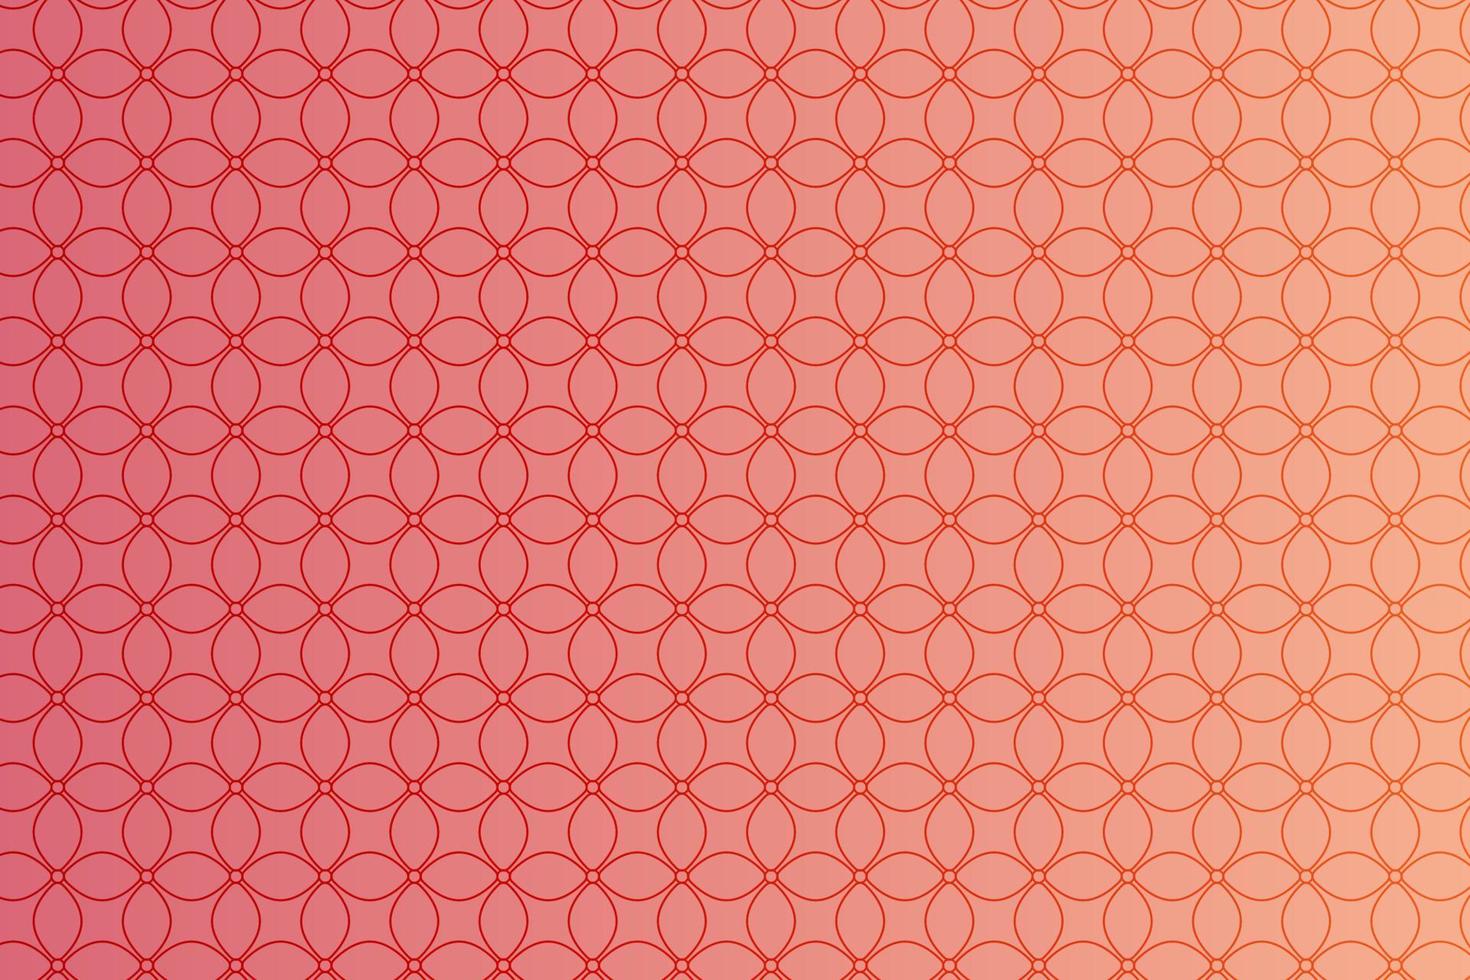 Muster mit geometrischen Elementen in rosa-goldenen Tönen, abstrakter Hintergrund mit Farbverlauf vektor